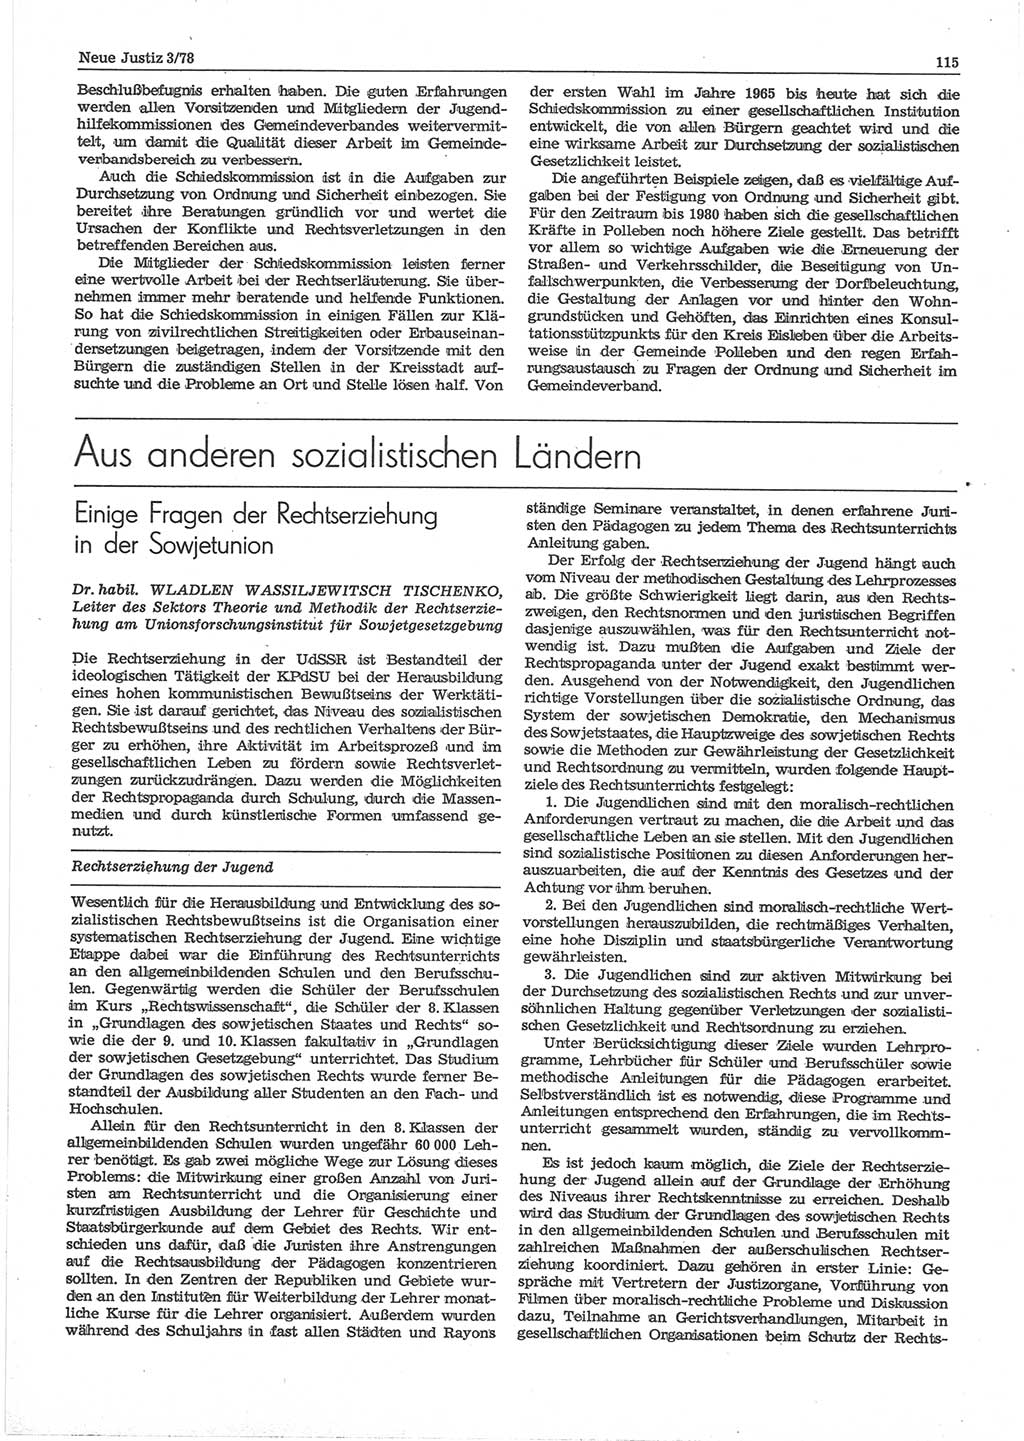 Neue Justiz (NJ), Zeitschrift für sozialistisches Recht und Gesetzlichkeit [Deutsche Demokratische Republik (DDR)], 32. Jahrgang 1978, Seite 115 (NJ DDR 1978, S. 115)